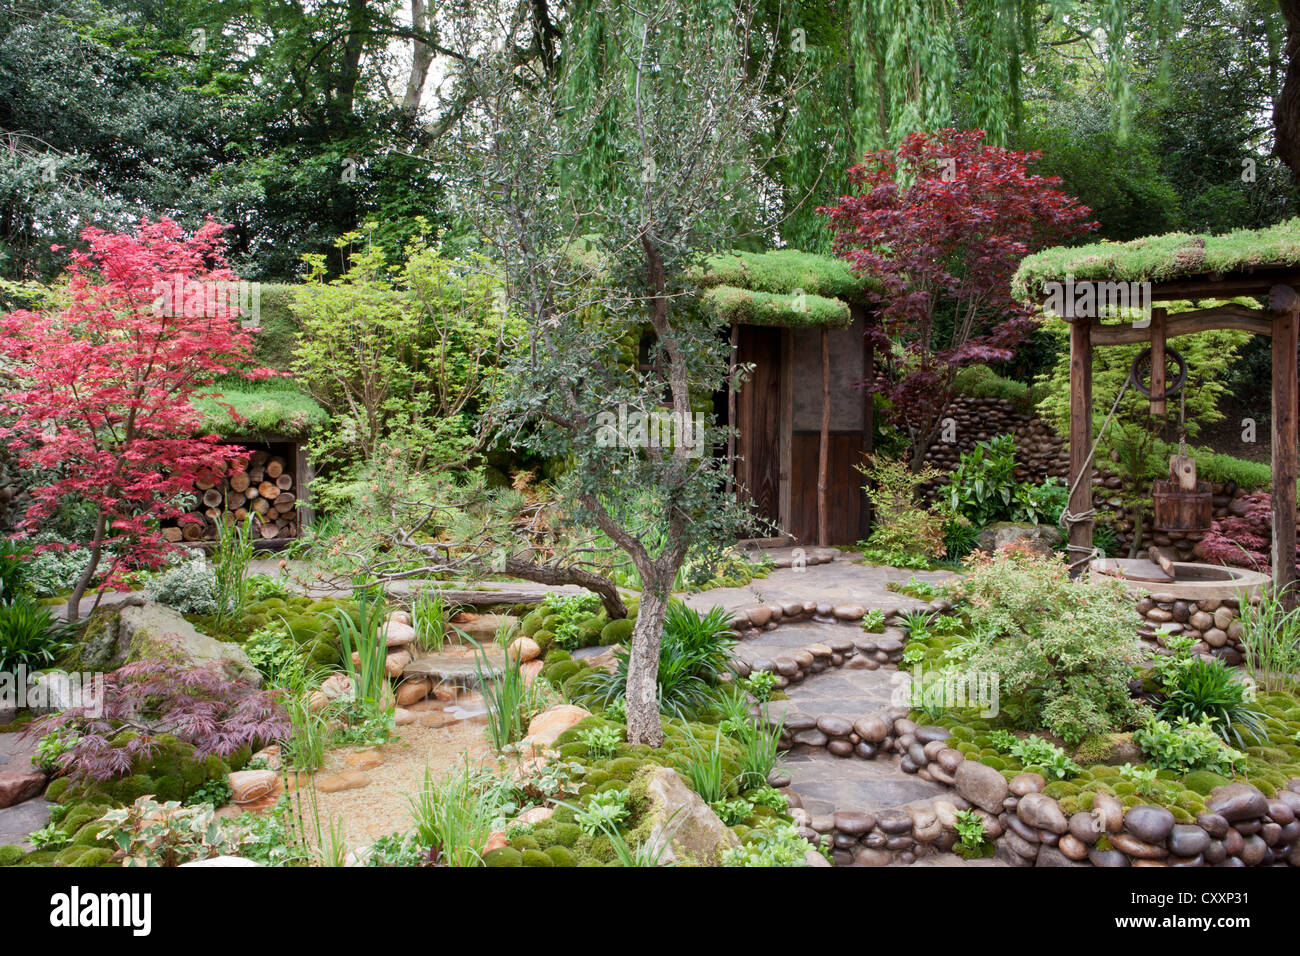 Ein kleiner japanischer Zen-Garten mit moosbedeckten Steinen Stein und Wasser verfügen über einen kleinen Teich - Acer palmatum Bäume Steingarten Pfad Pfade UK Stockfoto